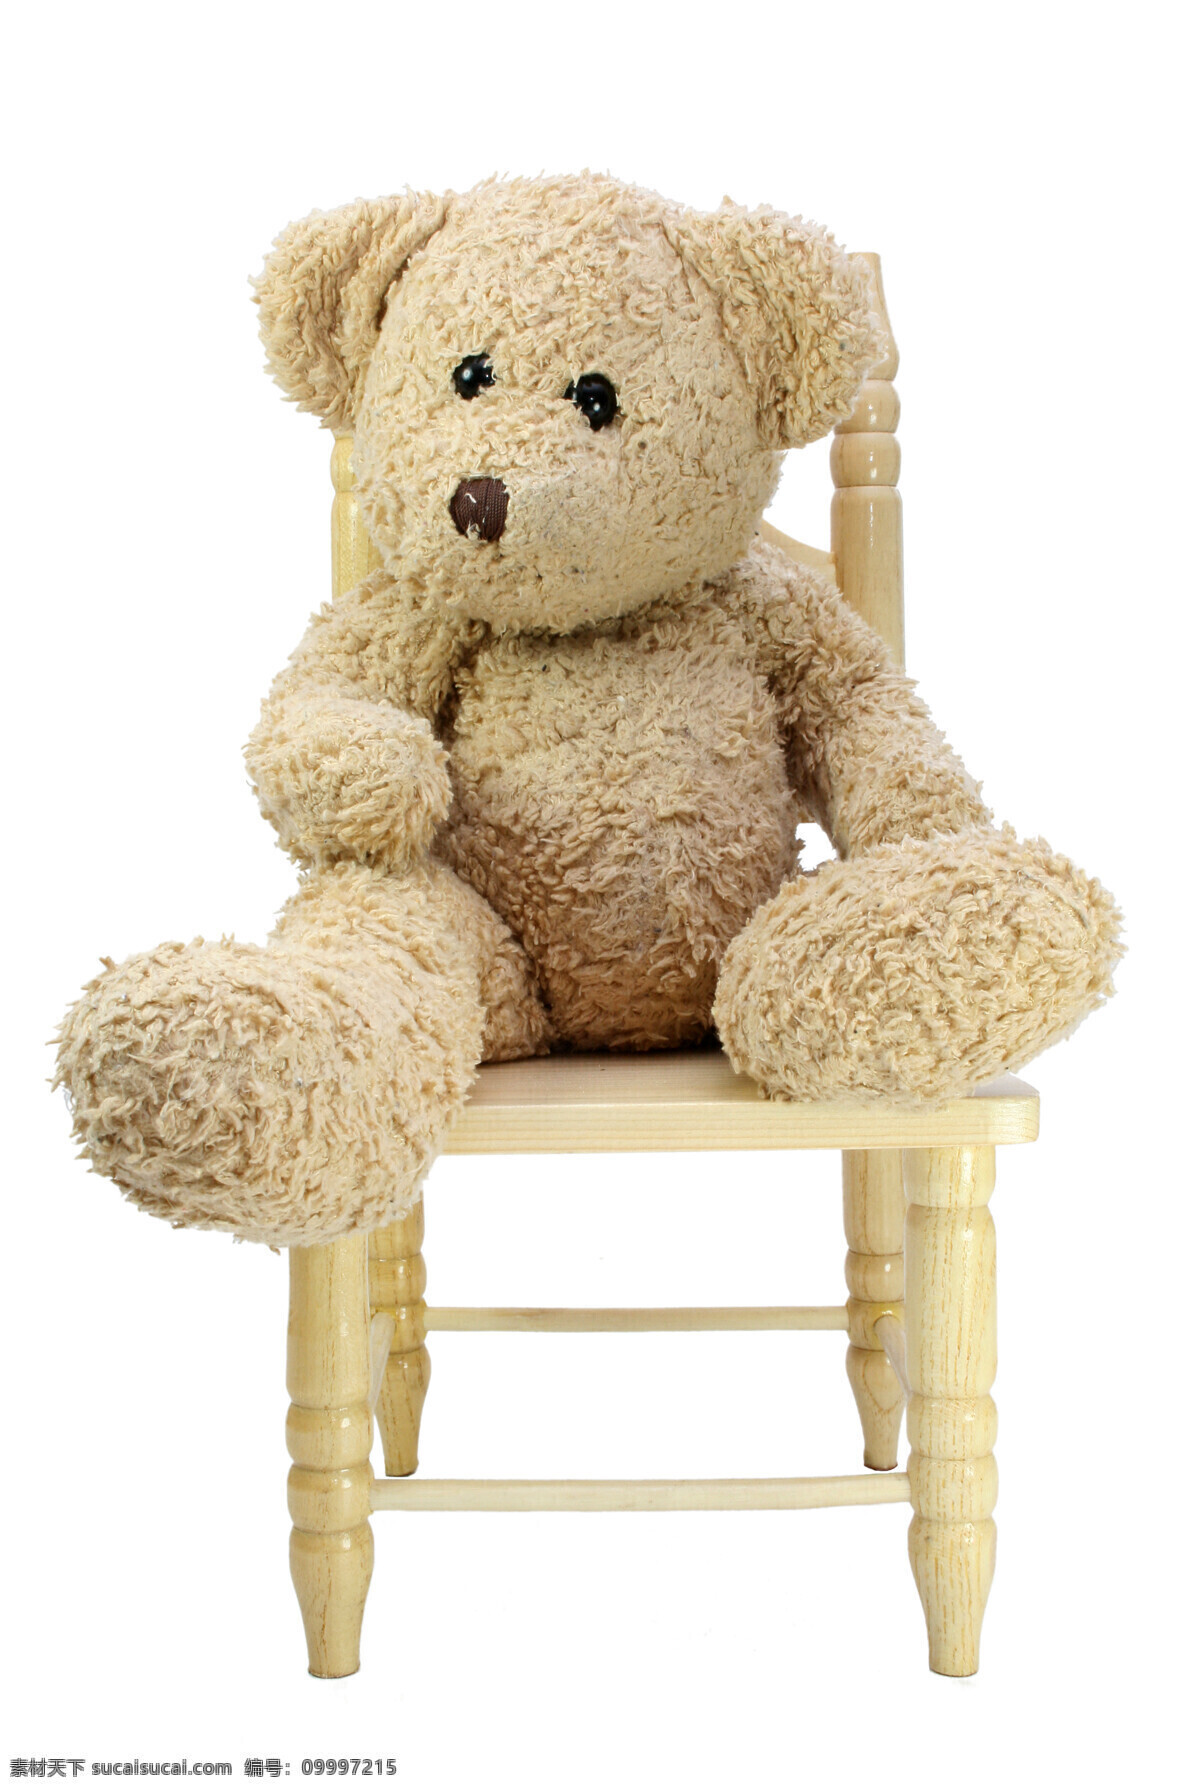 玩具 熊 高清 高清图片 玩具熊 teddybear 风景 生活 旅游餐饮